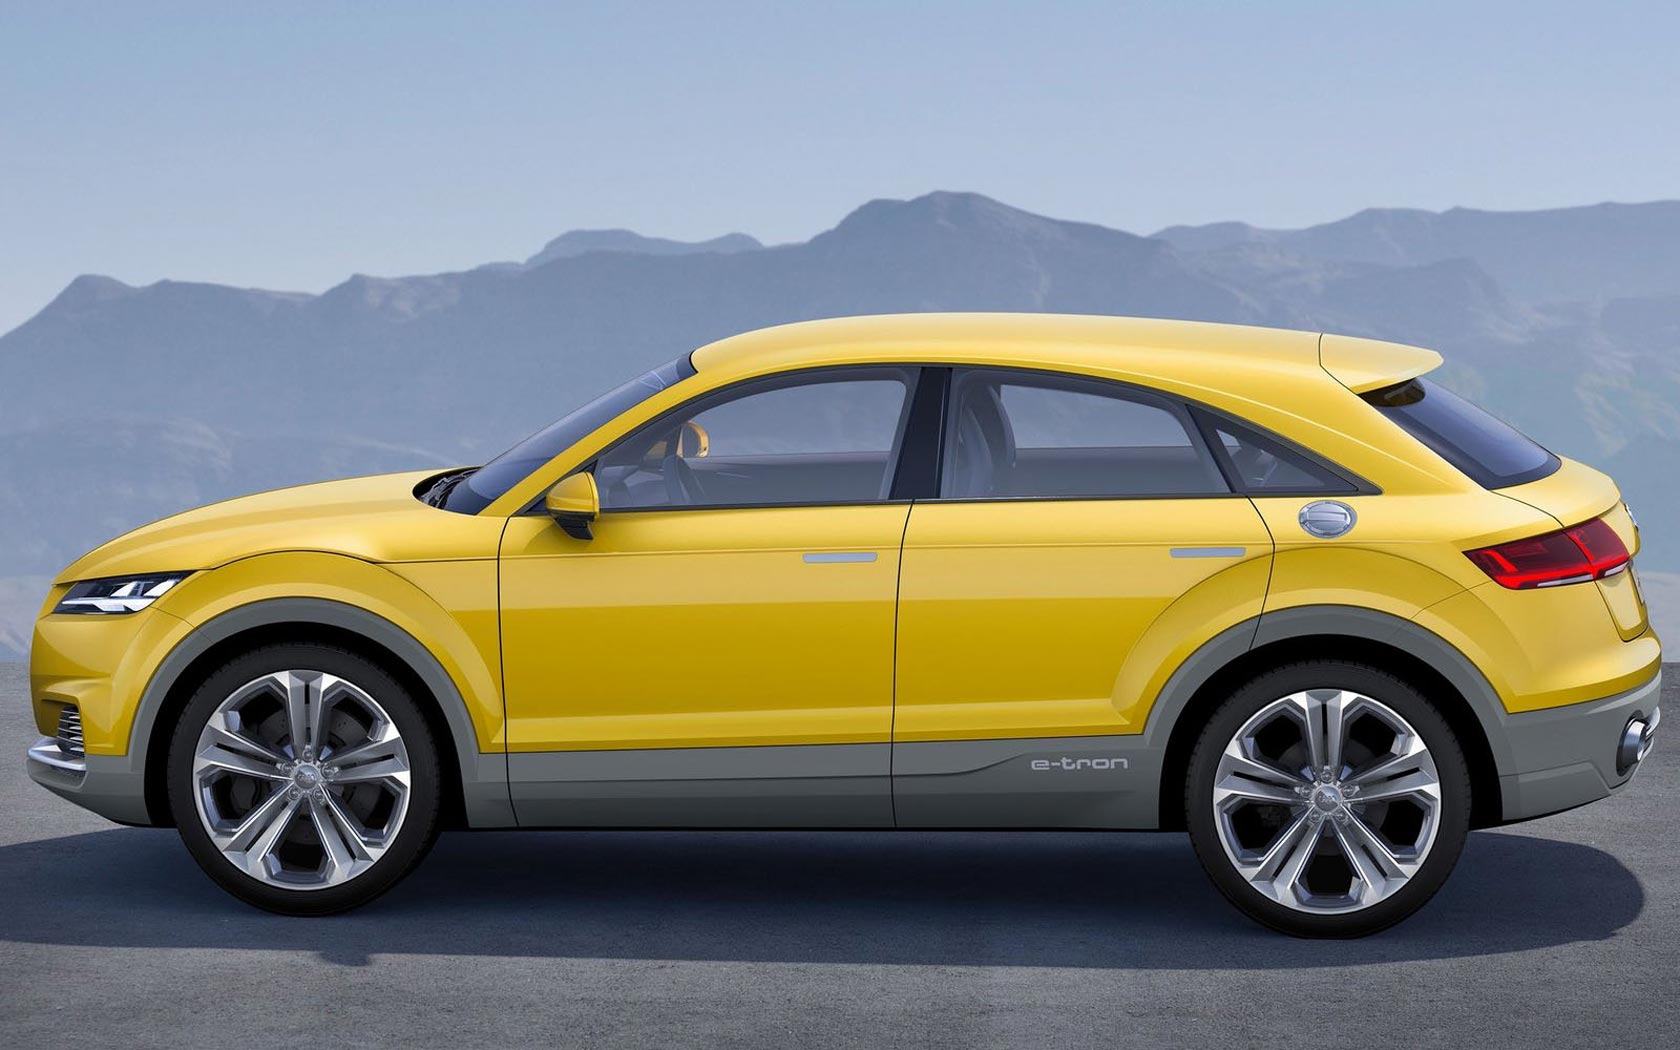  Audi TT Offroad Concept 